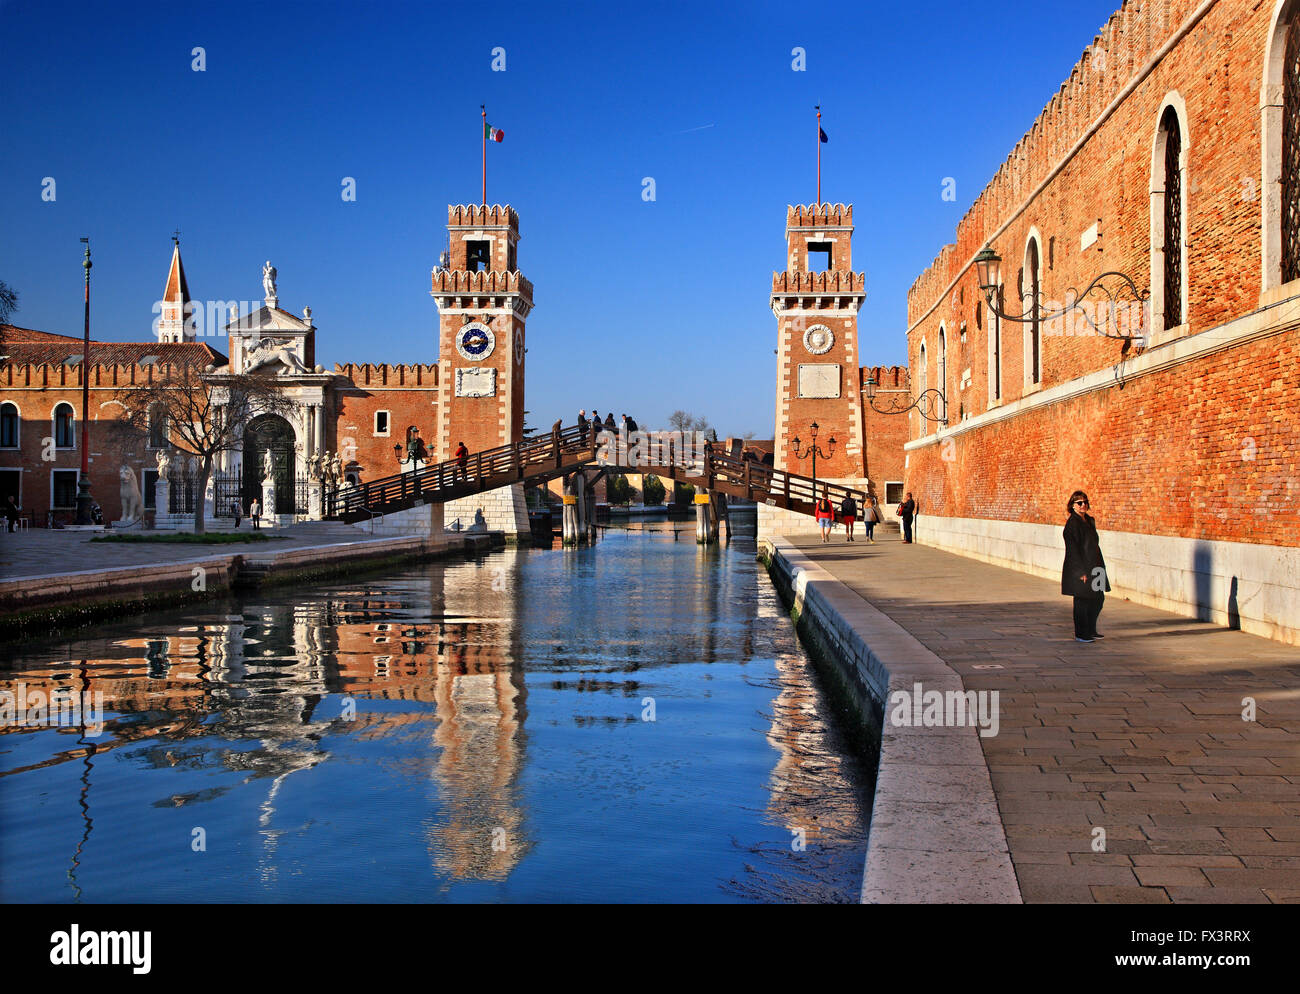 The Arsenale (shipyards), Sestiere di Castello, Venezia (Venice), Italy. Stock Photo